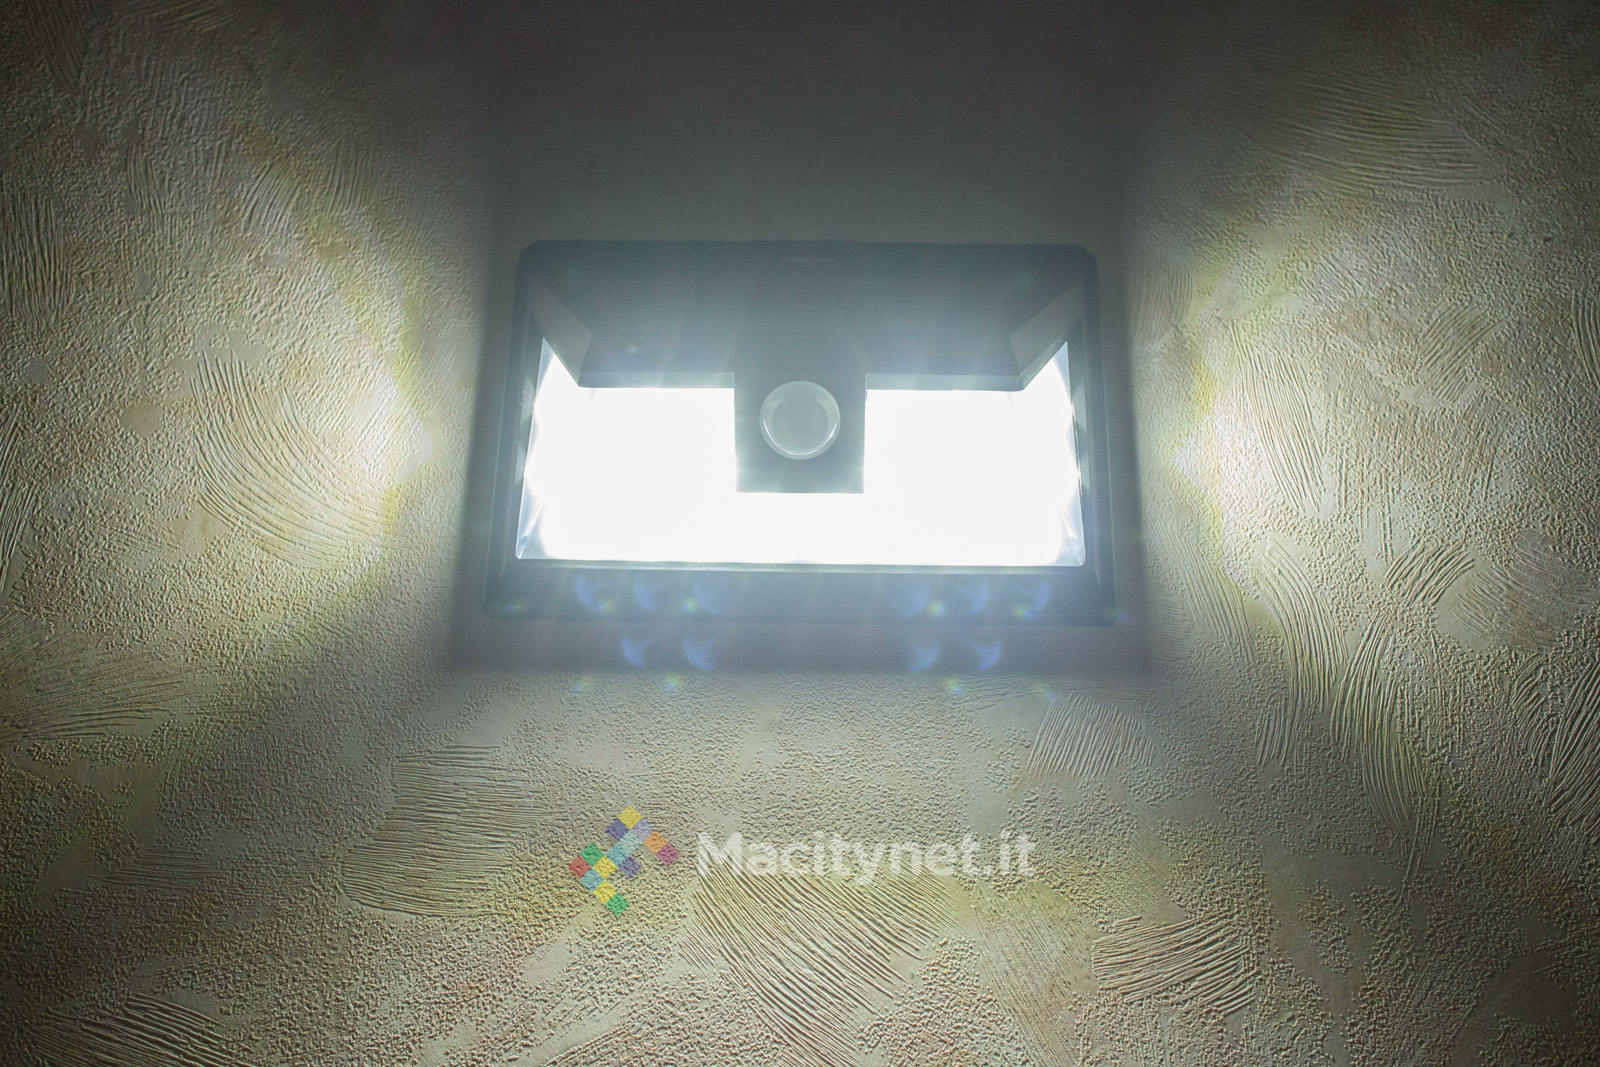 Macitynet mette alla prova Mpow GECD011AB, una lampada LED per esterni: piace per l’assenza di pulsanti e fili grazie all’accensione automatica tramite sensore di movimento ed alla ricarica della batteria con il pannello solare incorporato